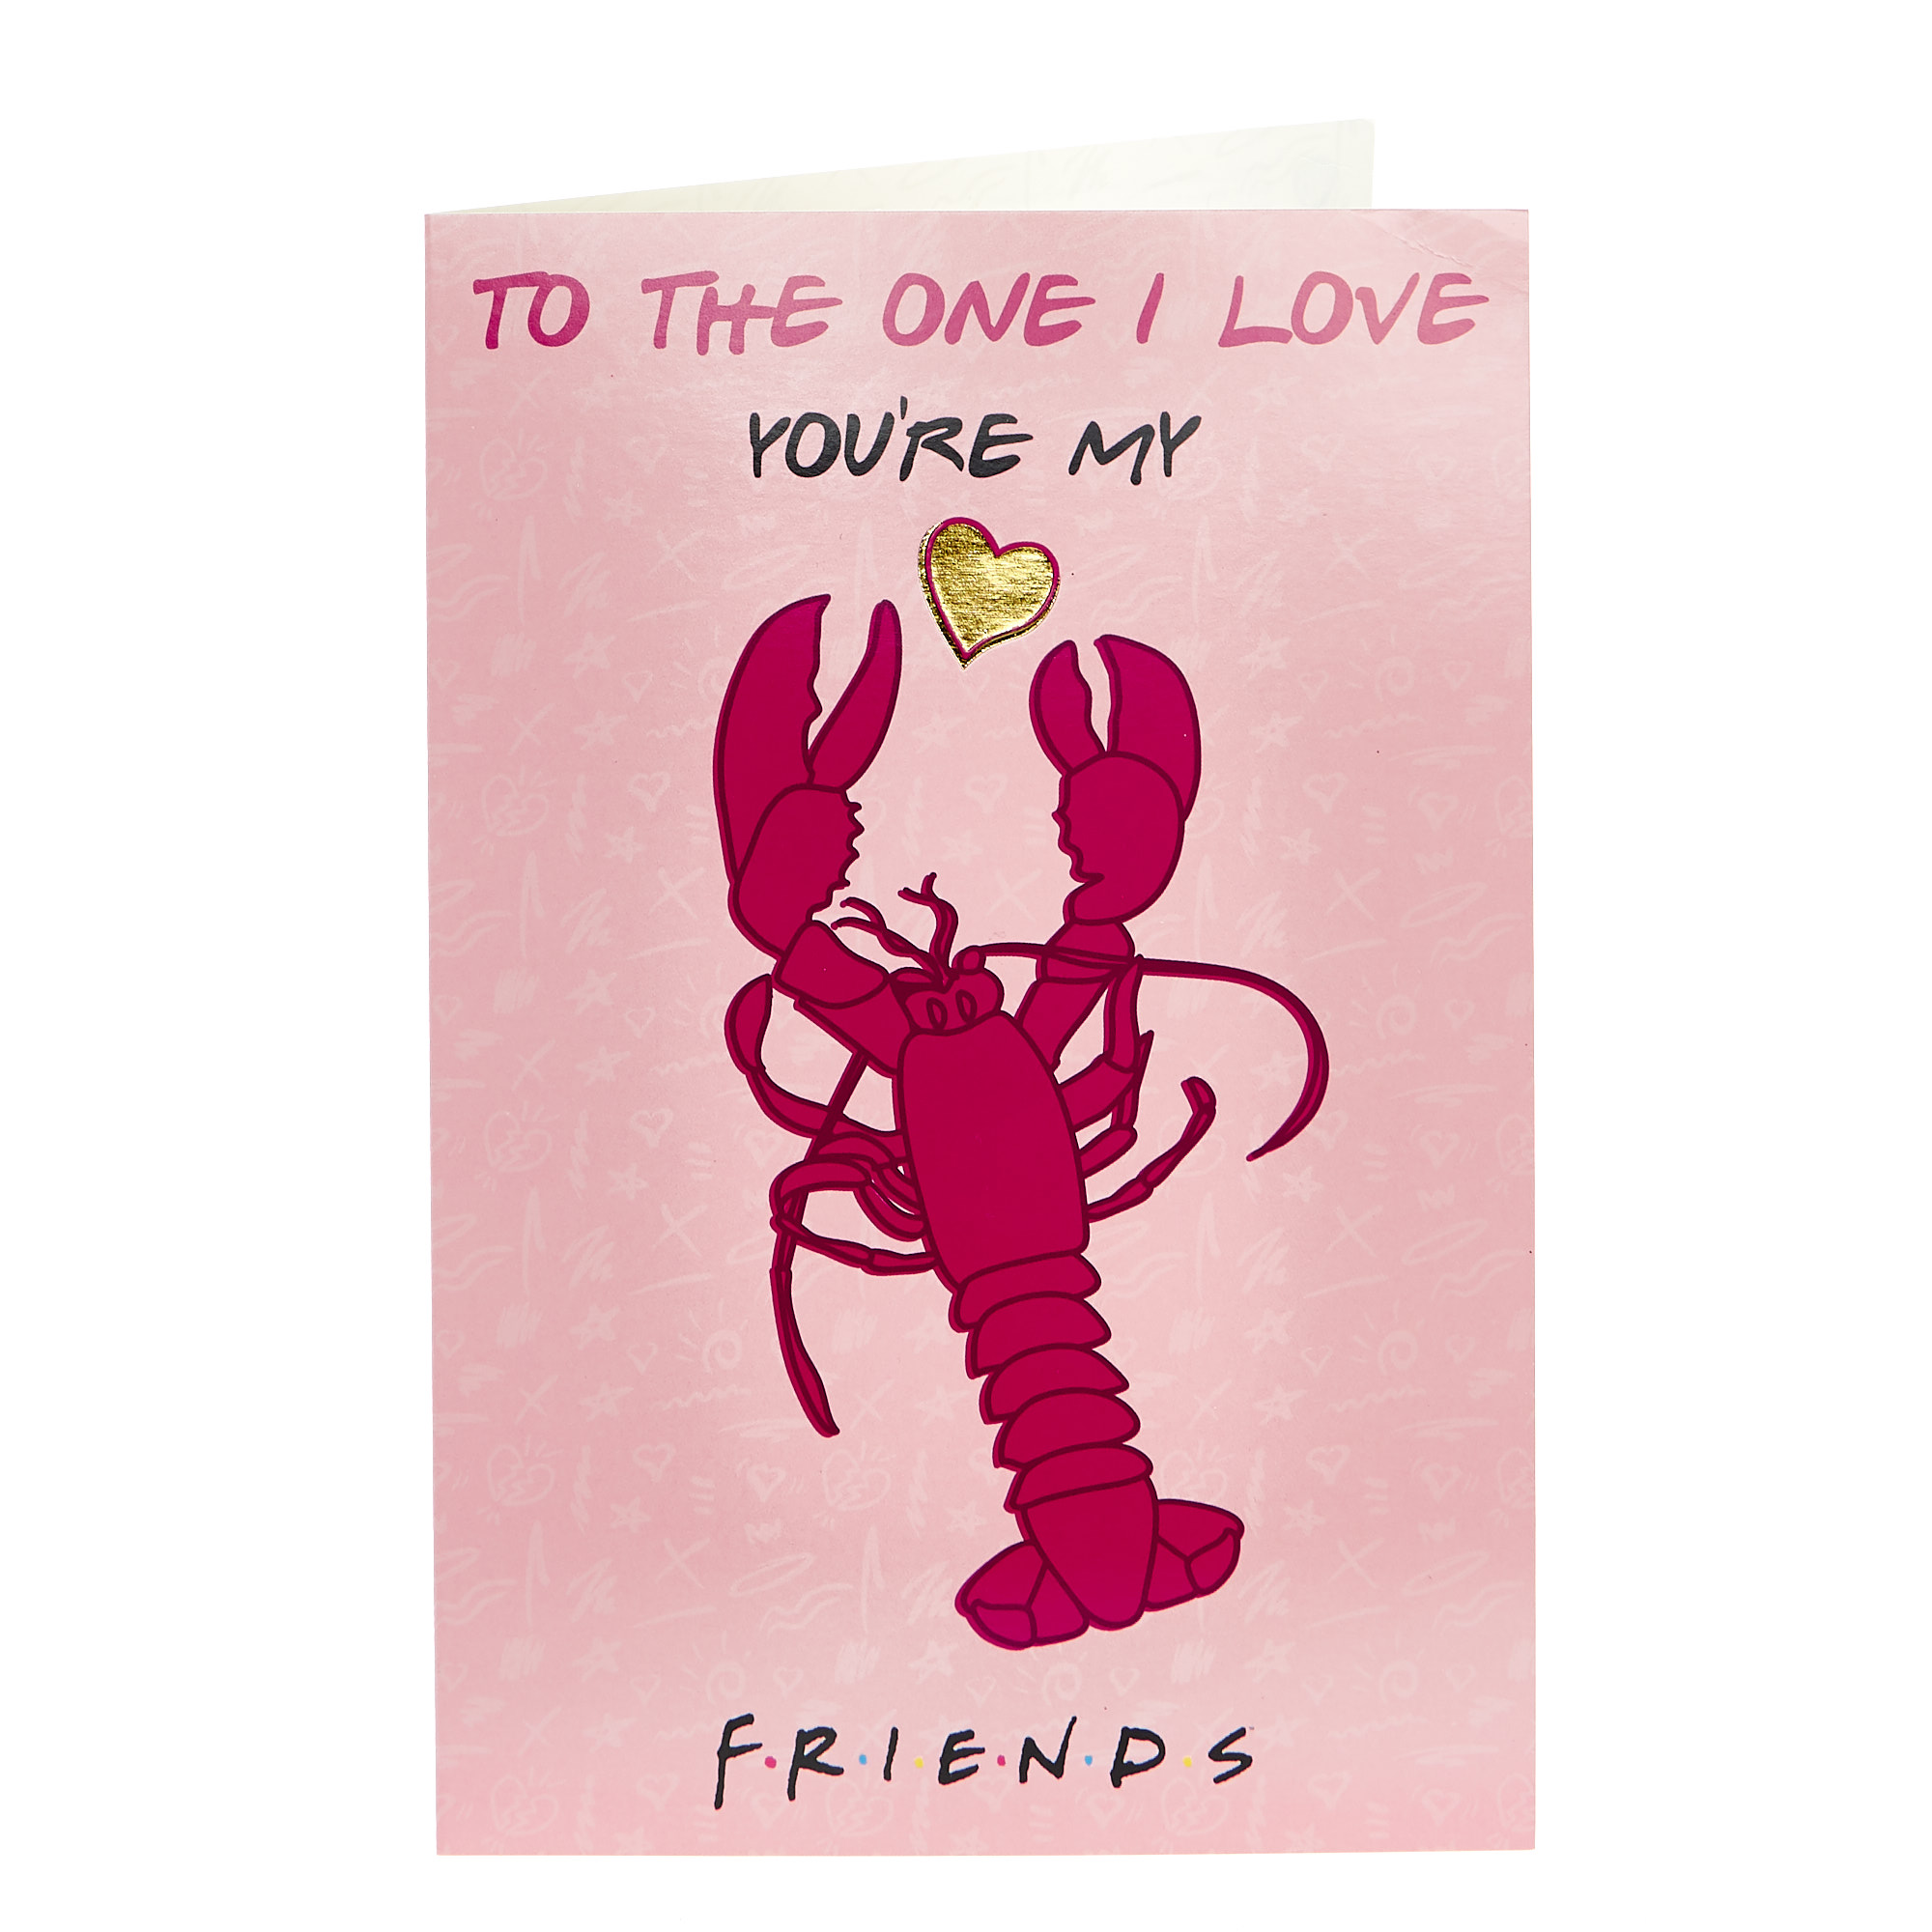 F.R.I.E.N.D.S Valentine's Day Card - You're My Lobster 